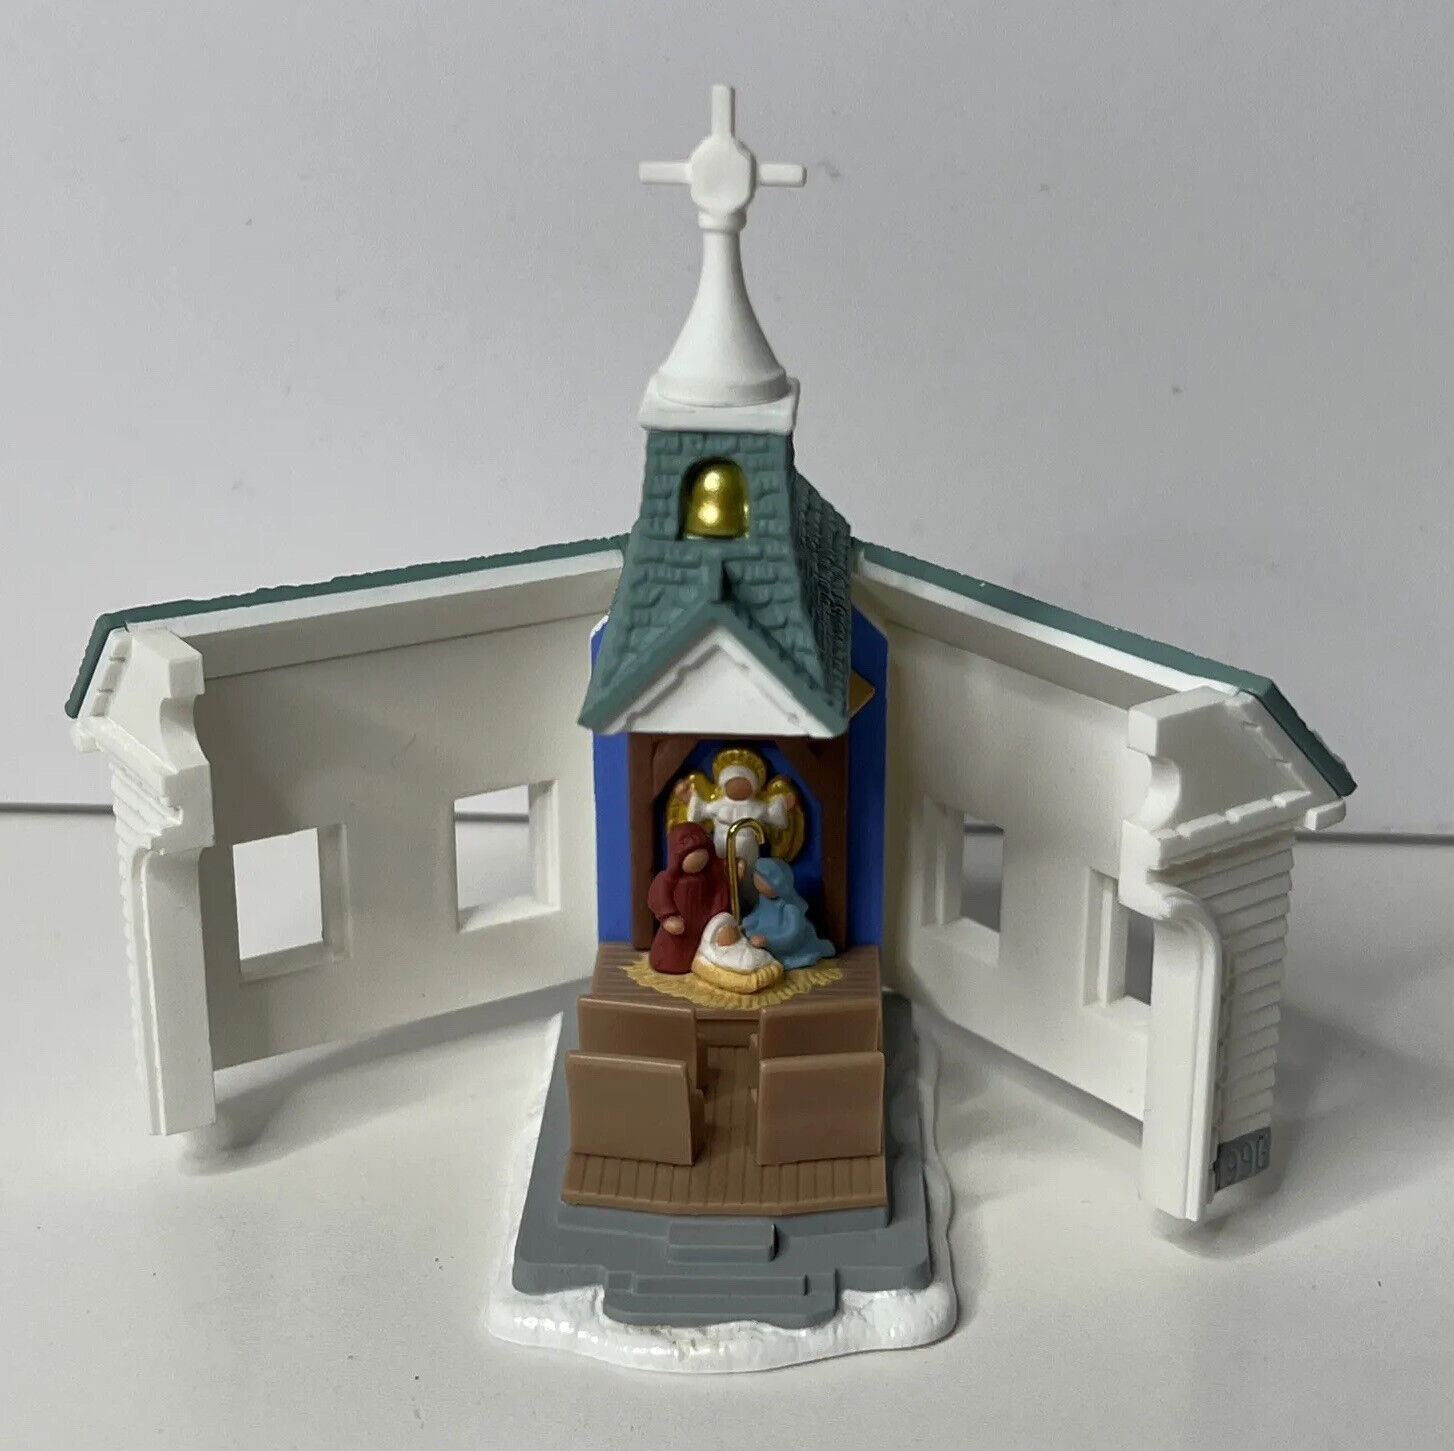 1996 Hallmark Keepsake Christmas Ornament Come All Ye Faithful Church Opens VTG